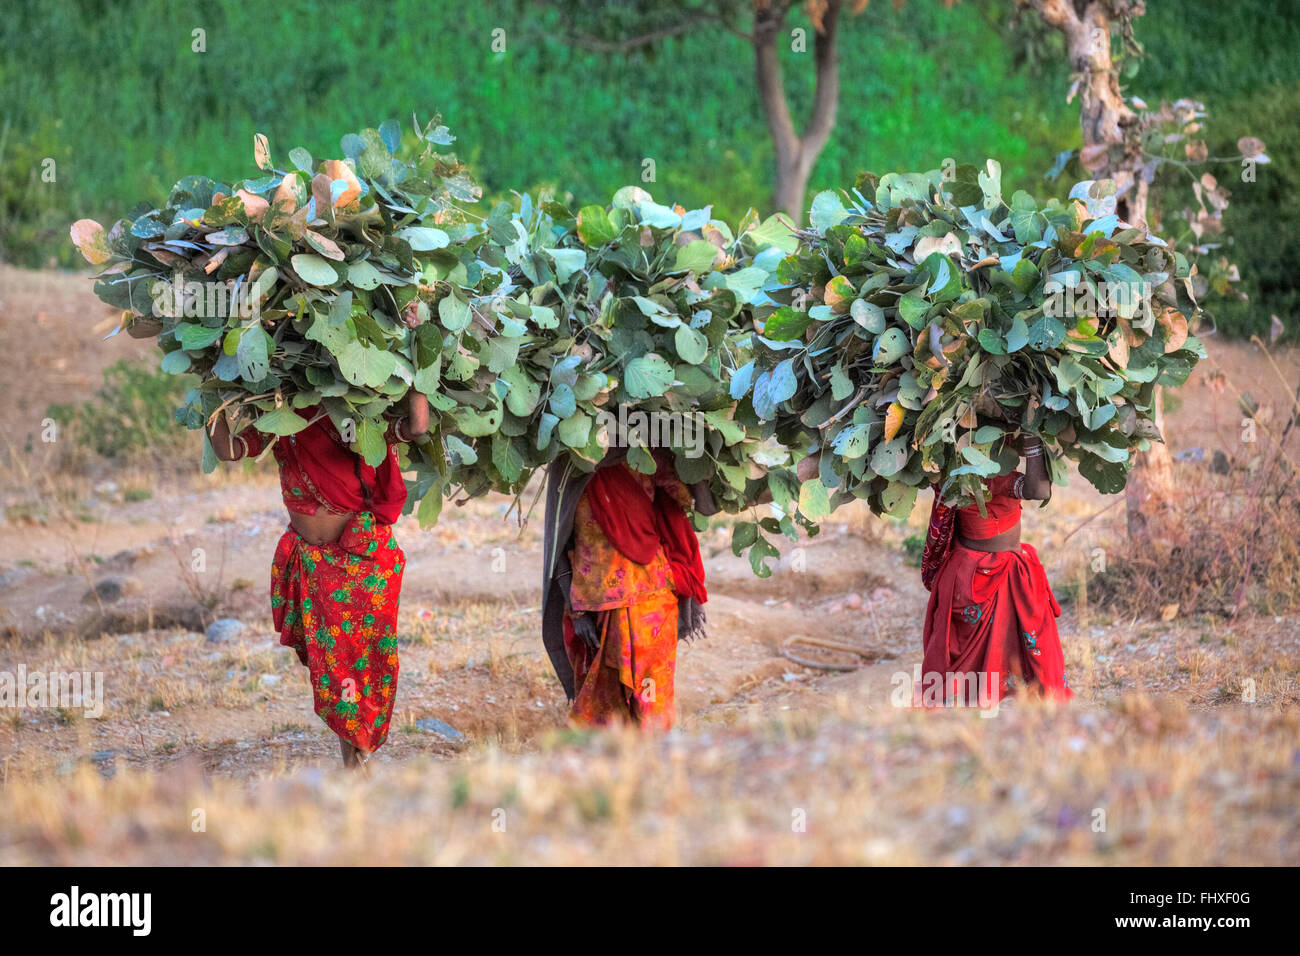 Las mujeres portadoras de hojas y ramas sobre su cabeza en la zona rural de Rajasthan, India Foto de stock